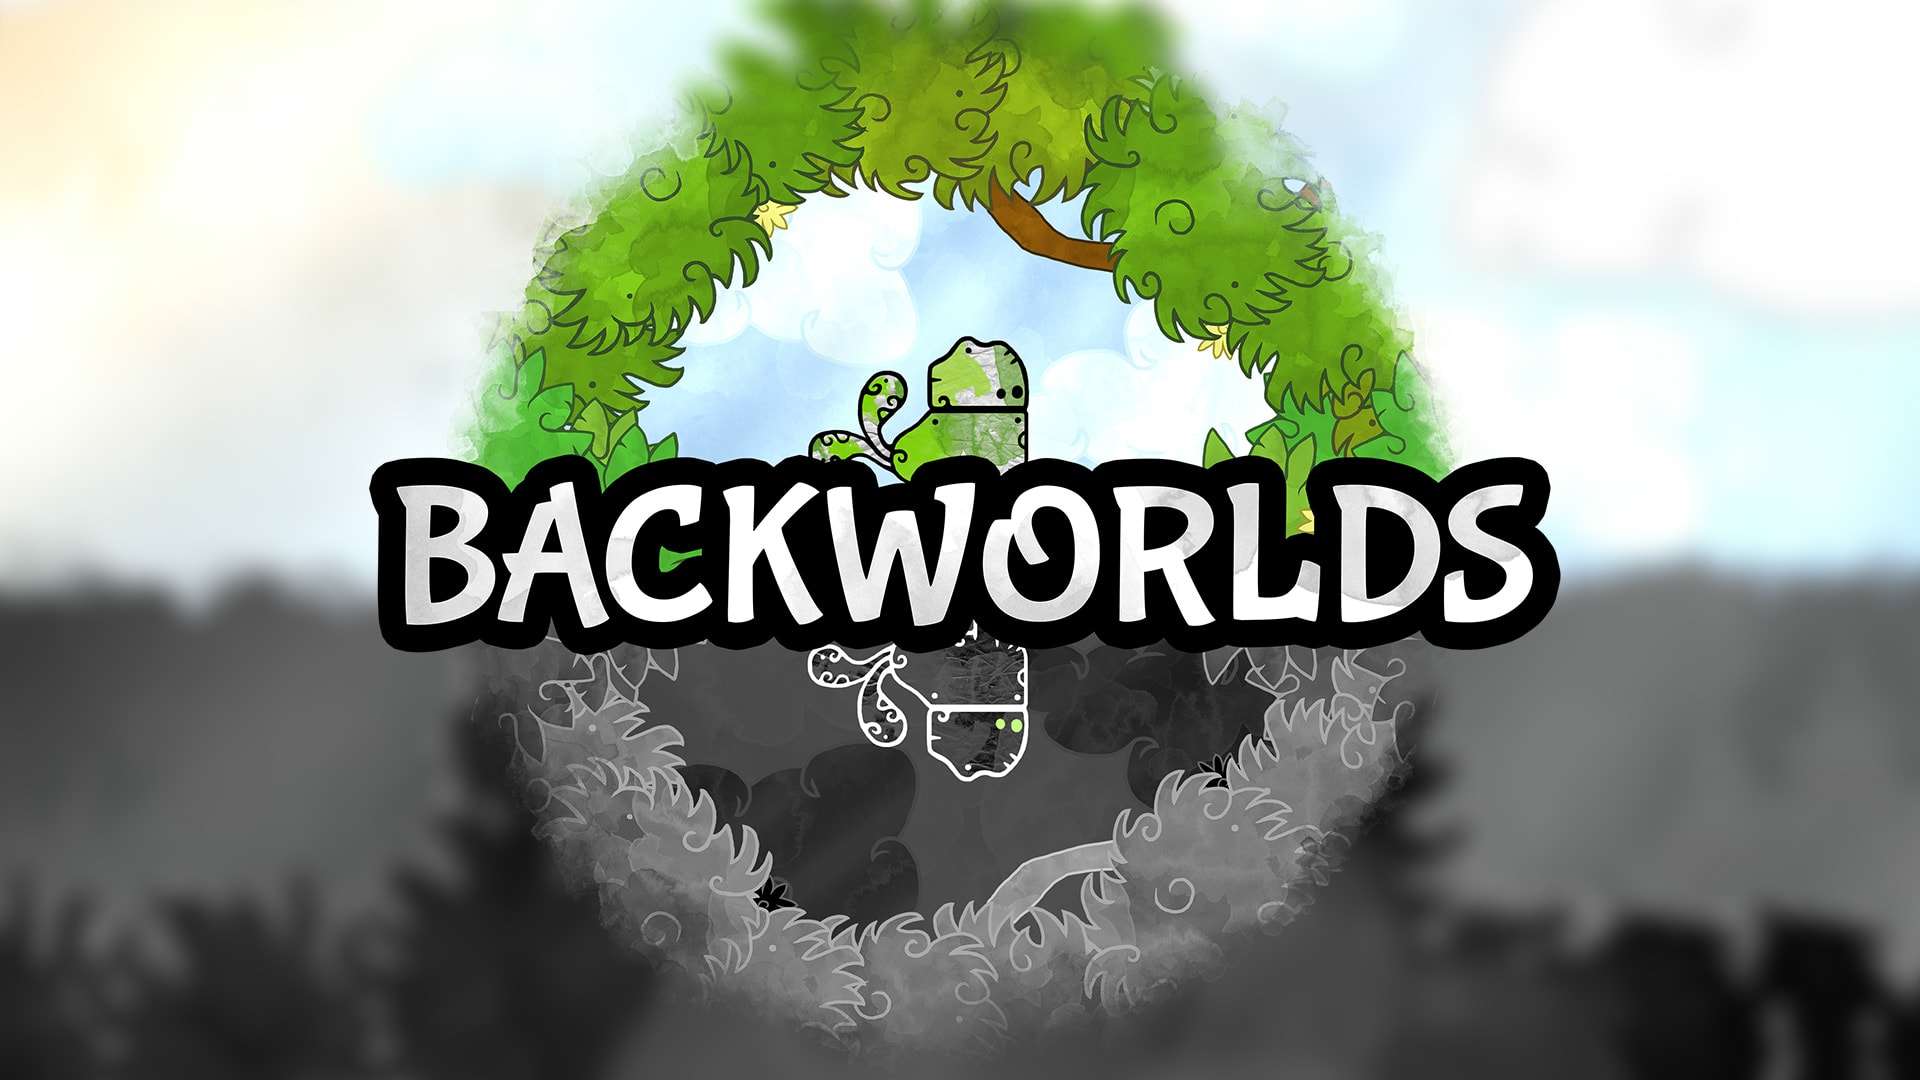 Backworlds